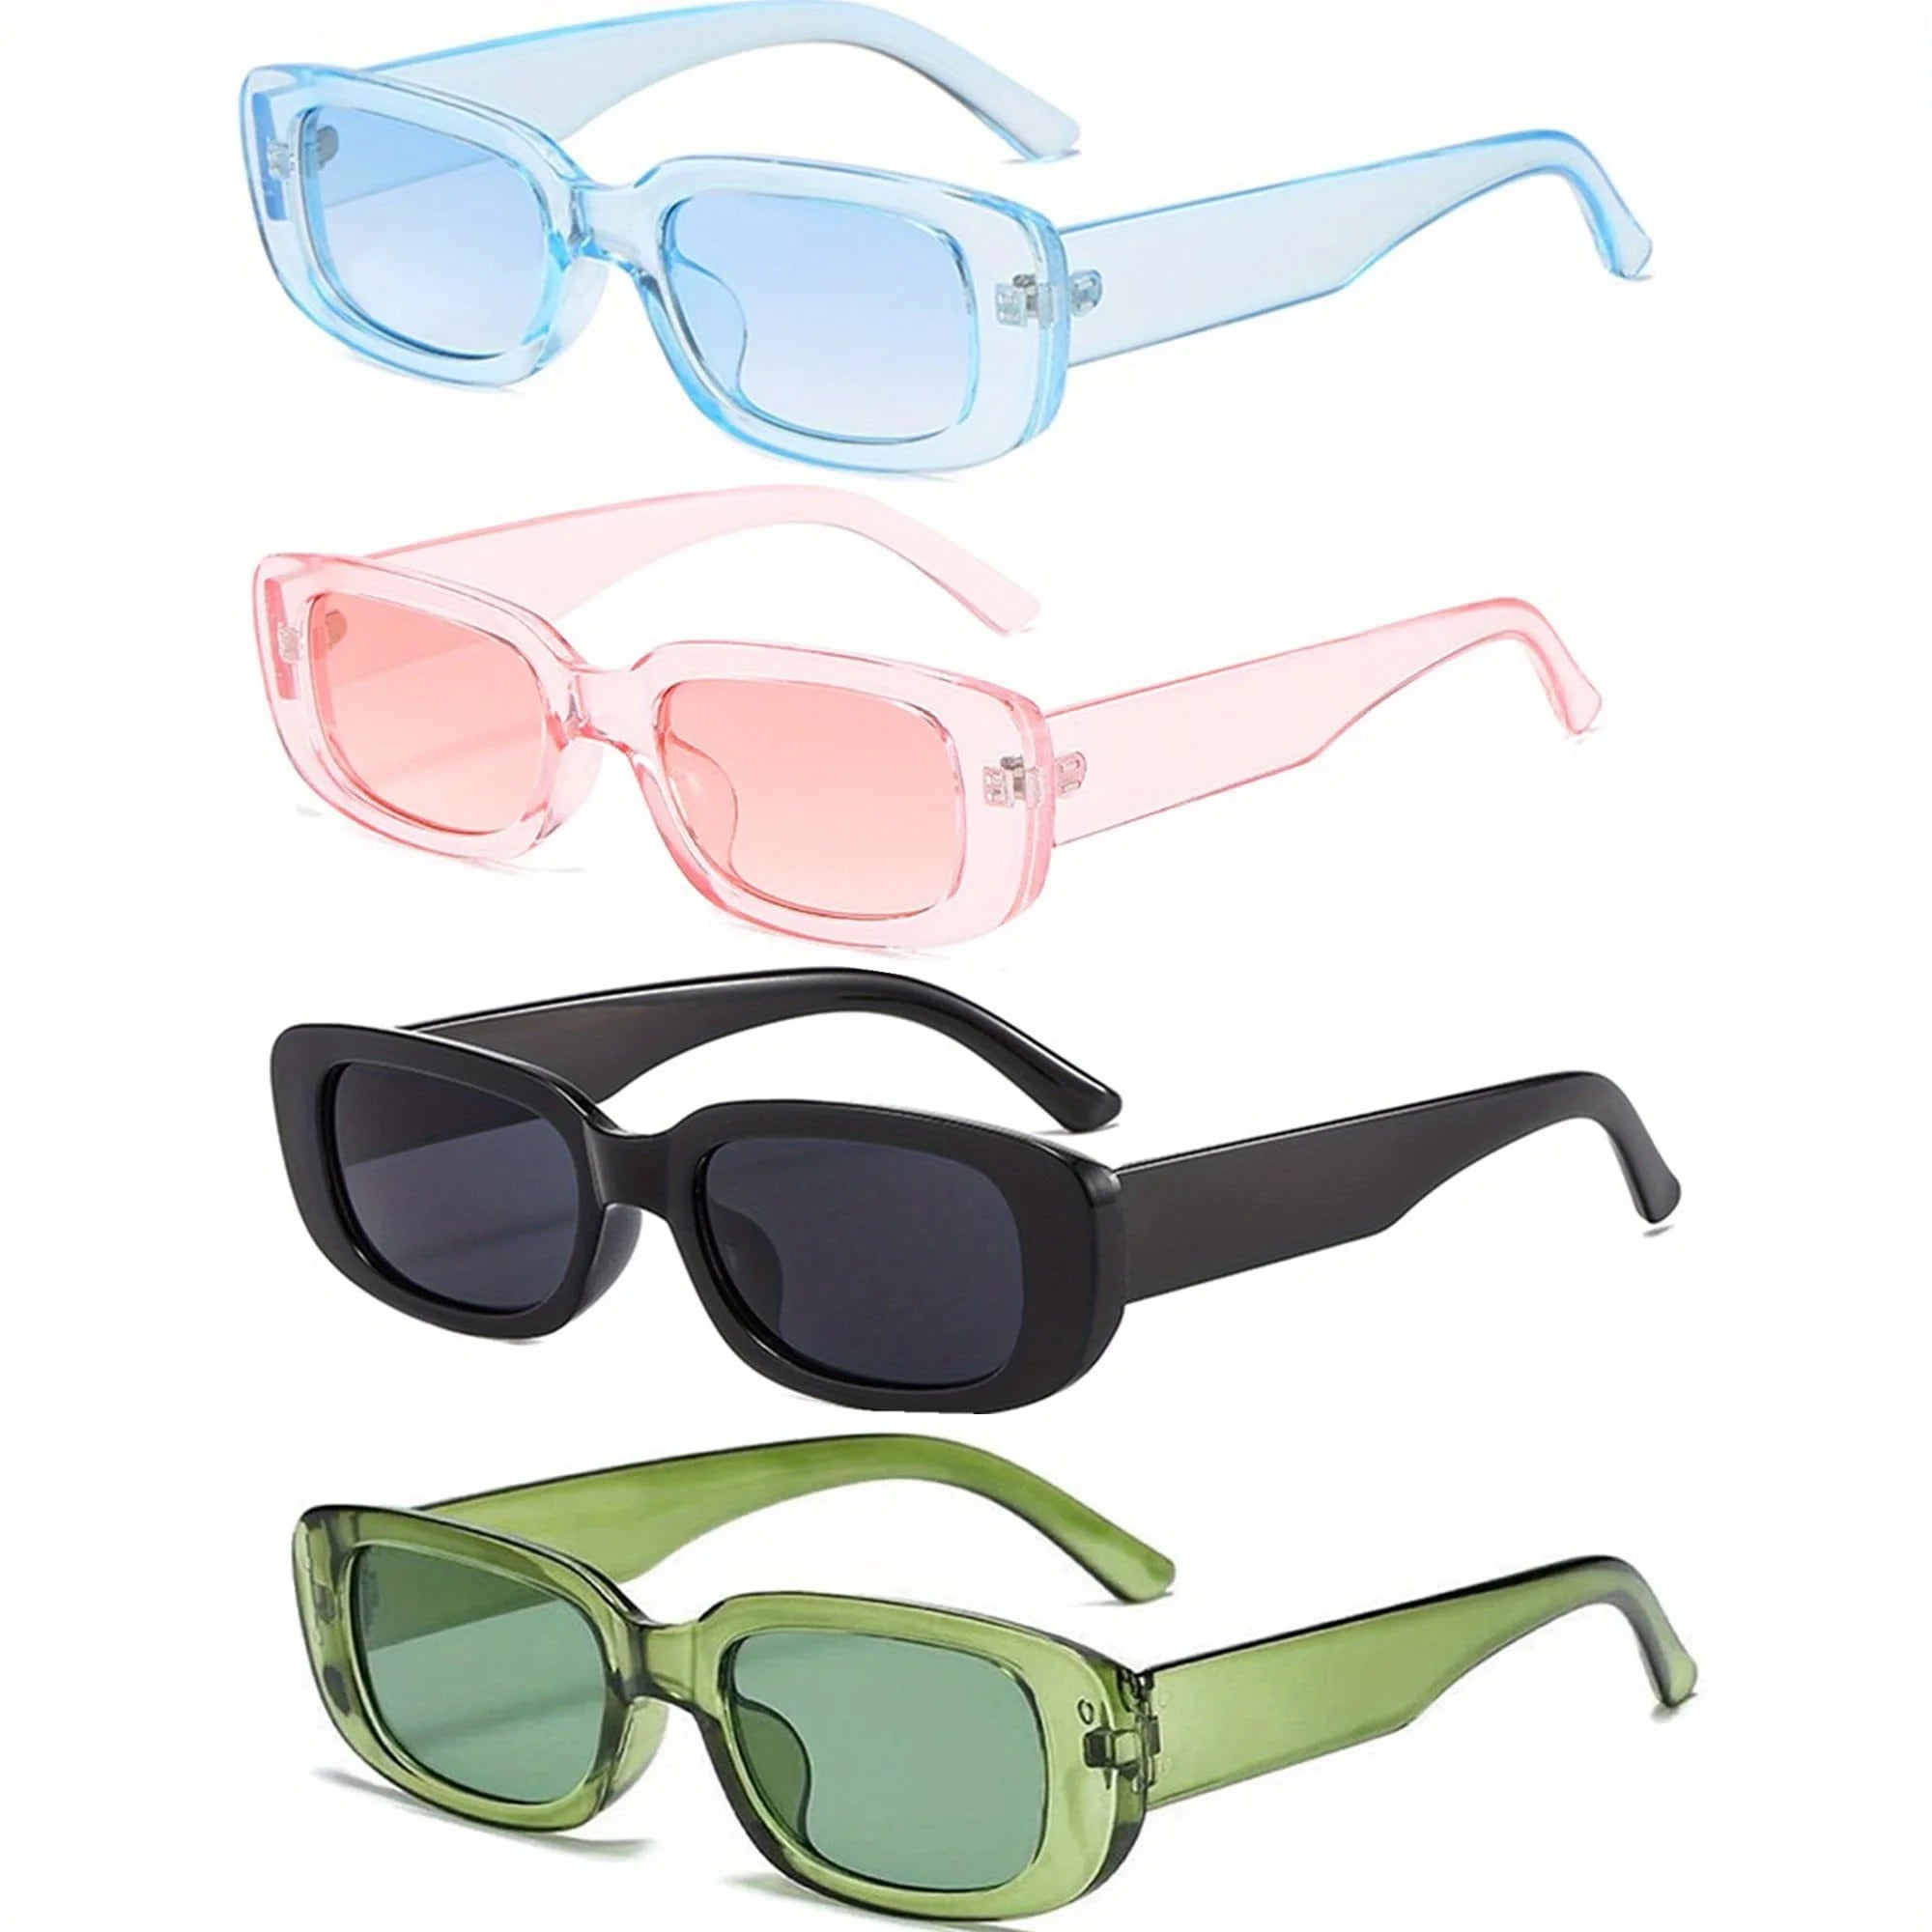 Set van 4 Stuks Rechthoekige Retro Brillen - Blauw, Roze, Zwart, Groen